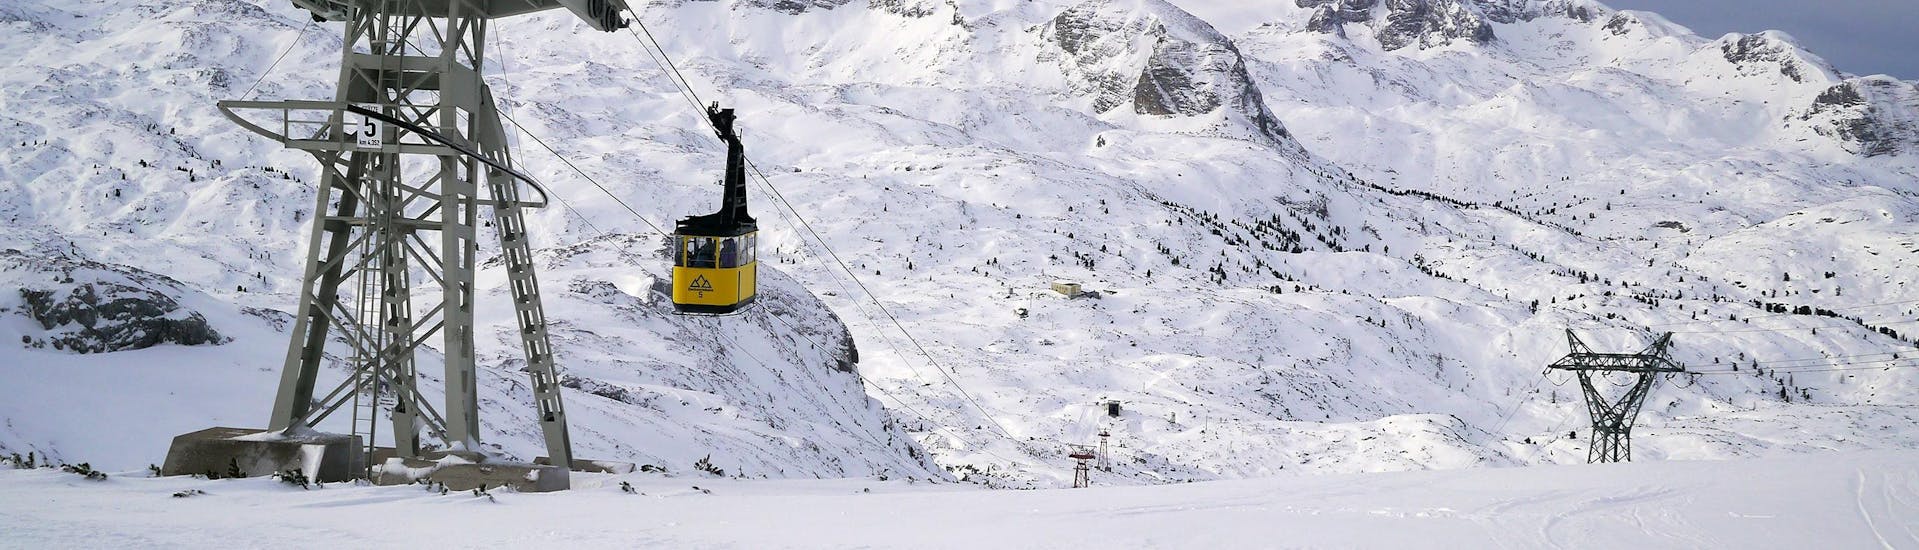 Blick auf die Gondel im verschneiten Skigebiet Dachstein Krippenstein in Oberösterreich, wo örtliche Skischulen ihre Skikurse anbieten.